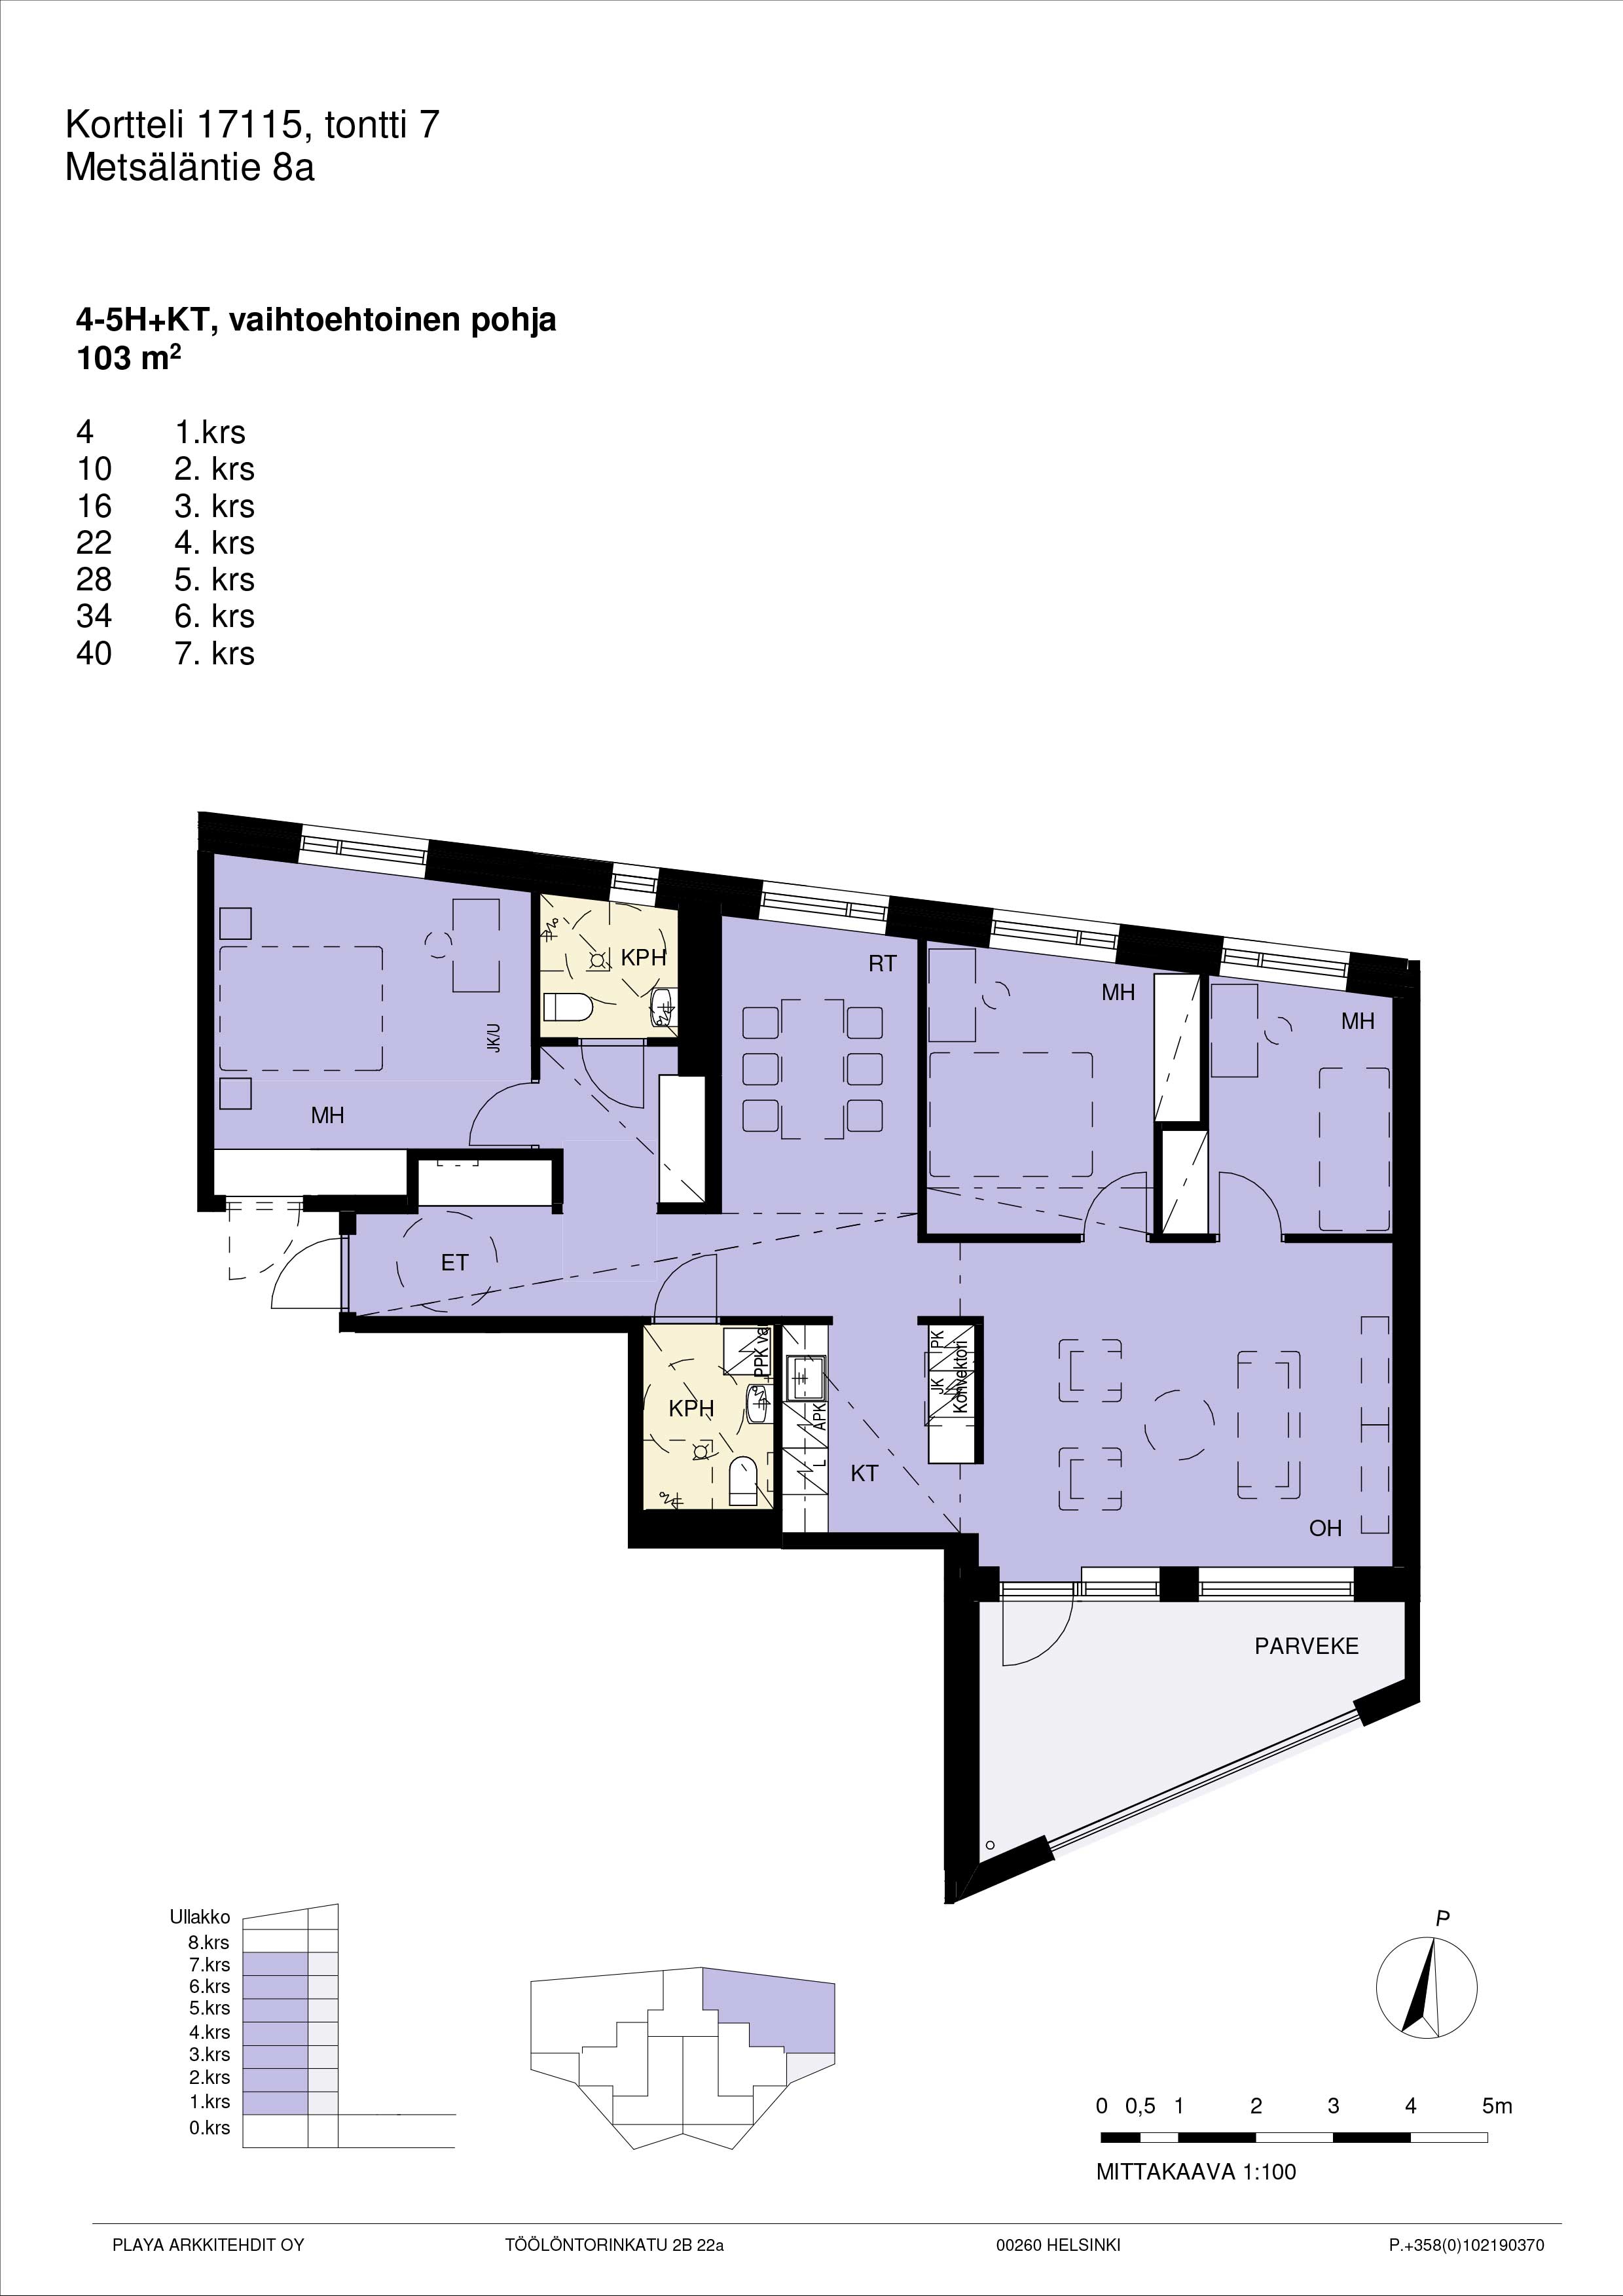 Pohjakuva A4, 4-5h+kt yhtenäinen suuri asunto 103 m2